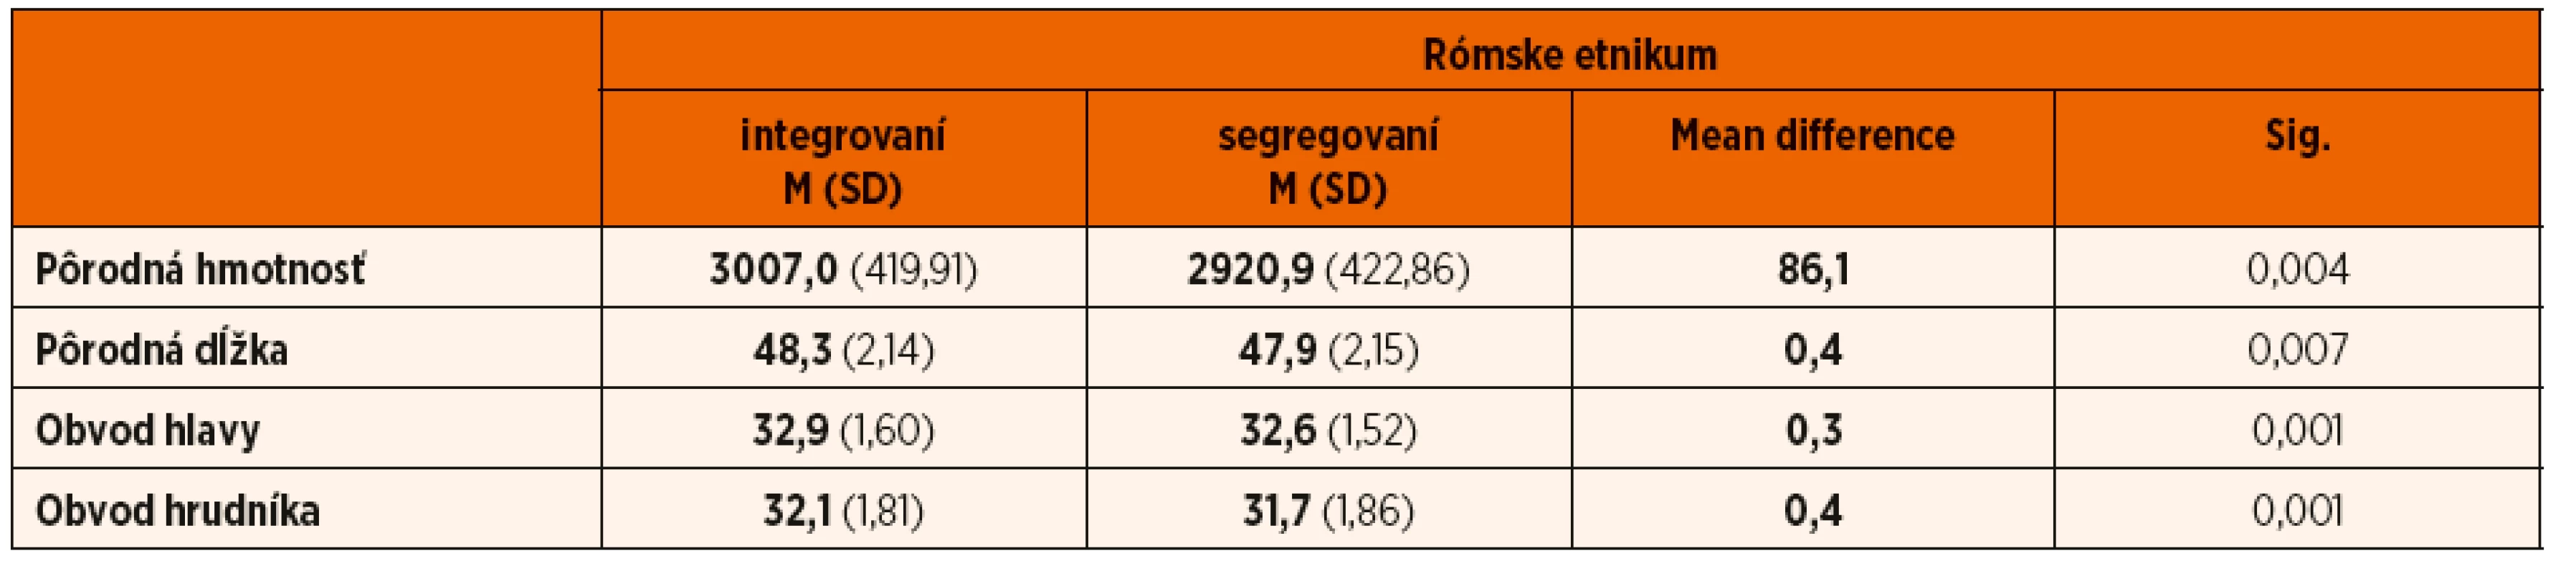 Komparácia antropometrických parametrov u novorodencov rómskeho etnika – integrovaných a segregovaných.